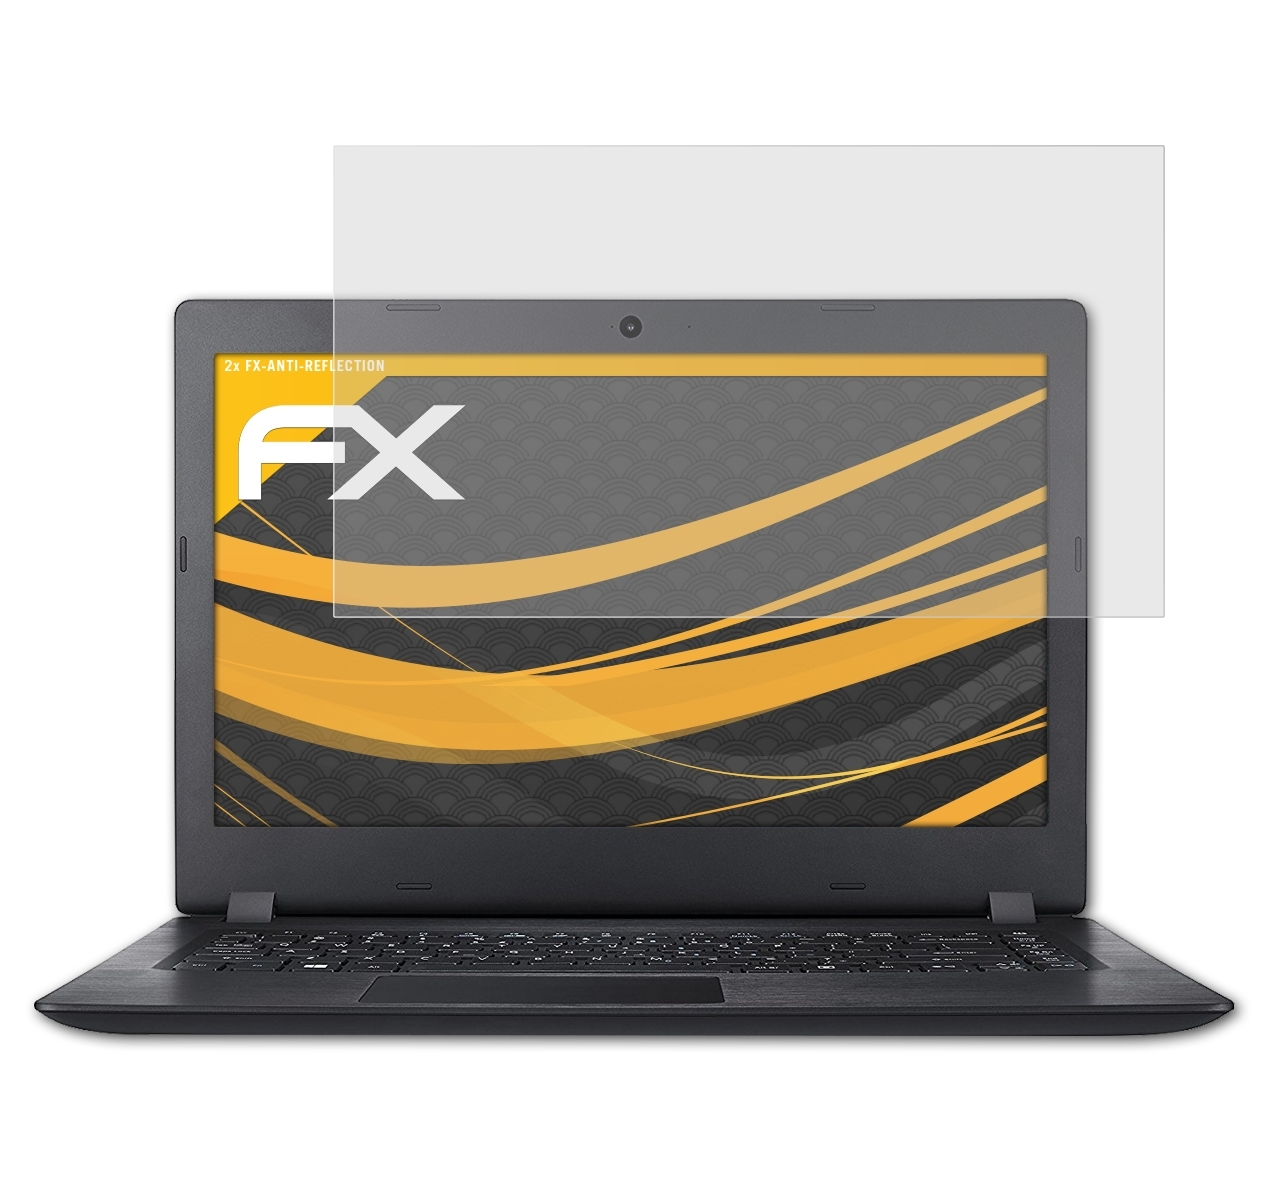 Displayschutz(für 2x A114-31 Aspire 1 (14 ATFOLIX inch)) FX-Antireflex Acer